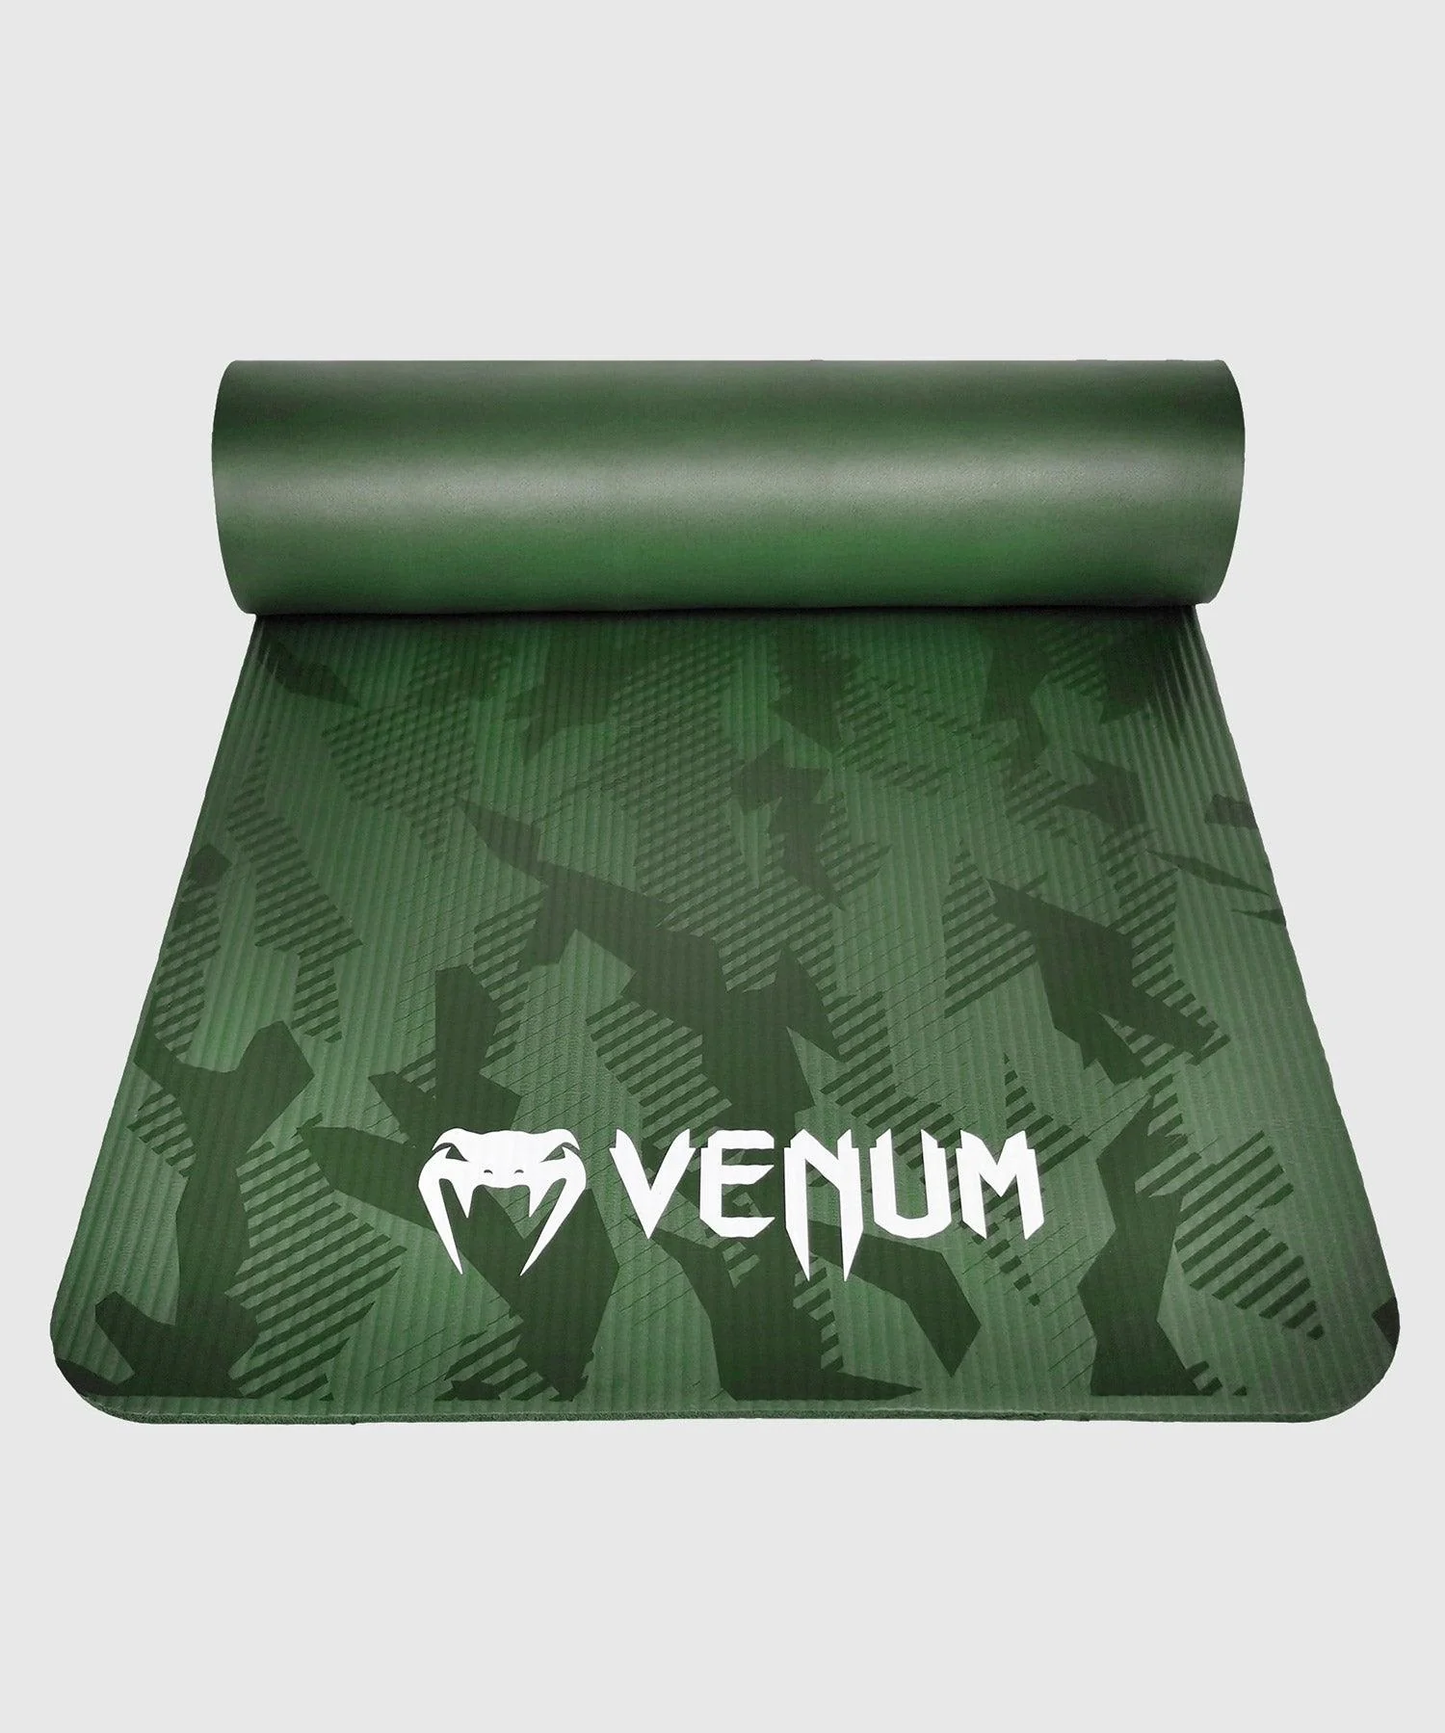 Venum Laser Yoga Mat